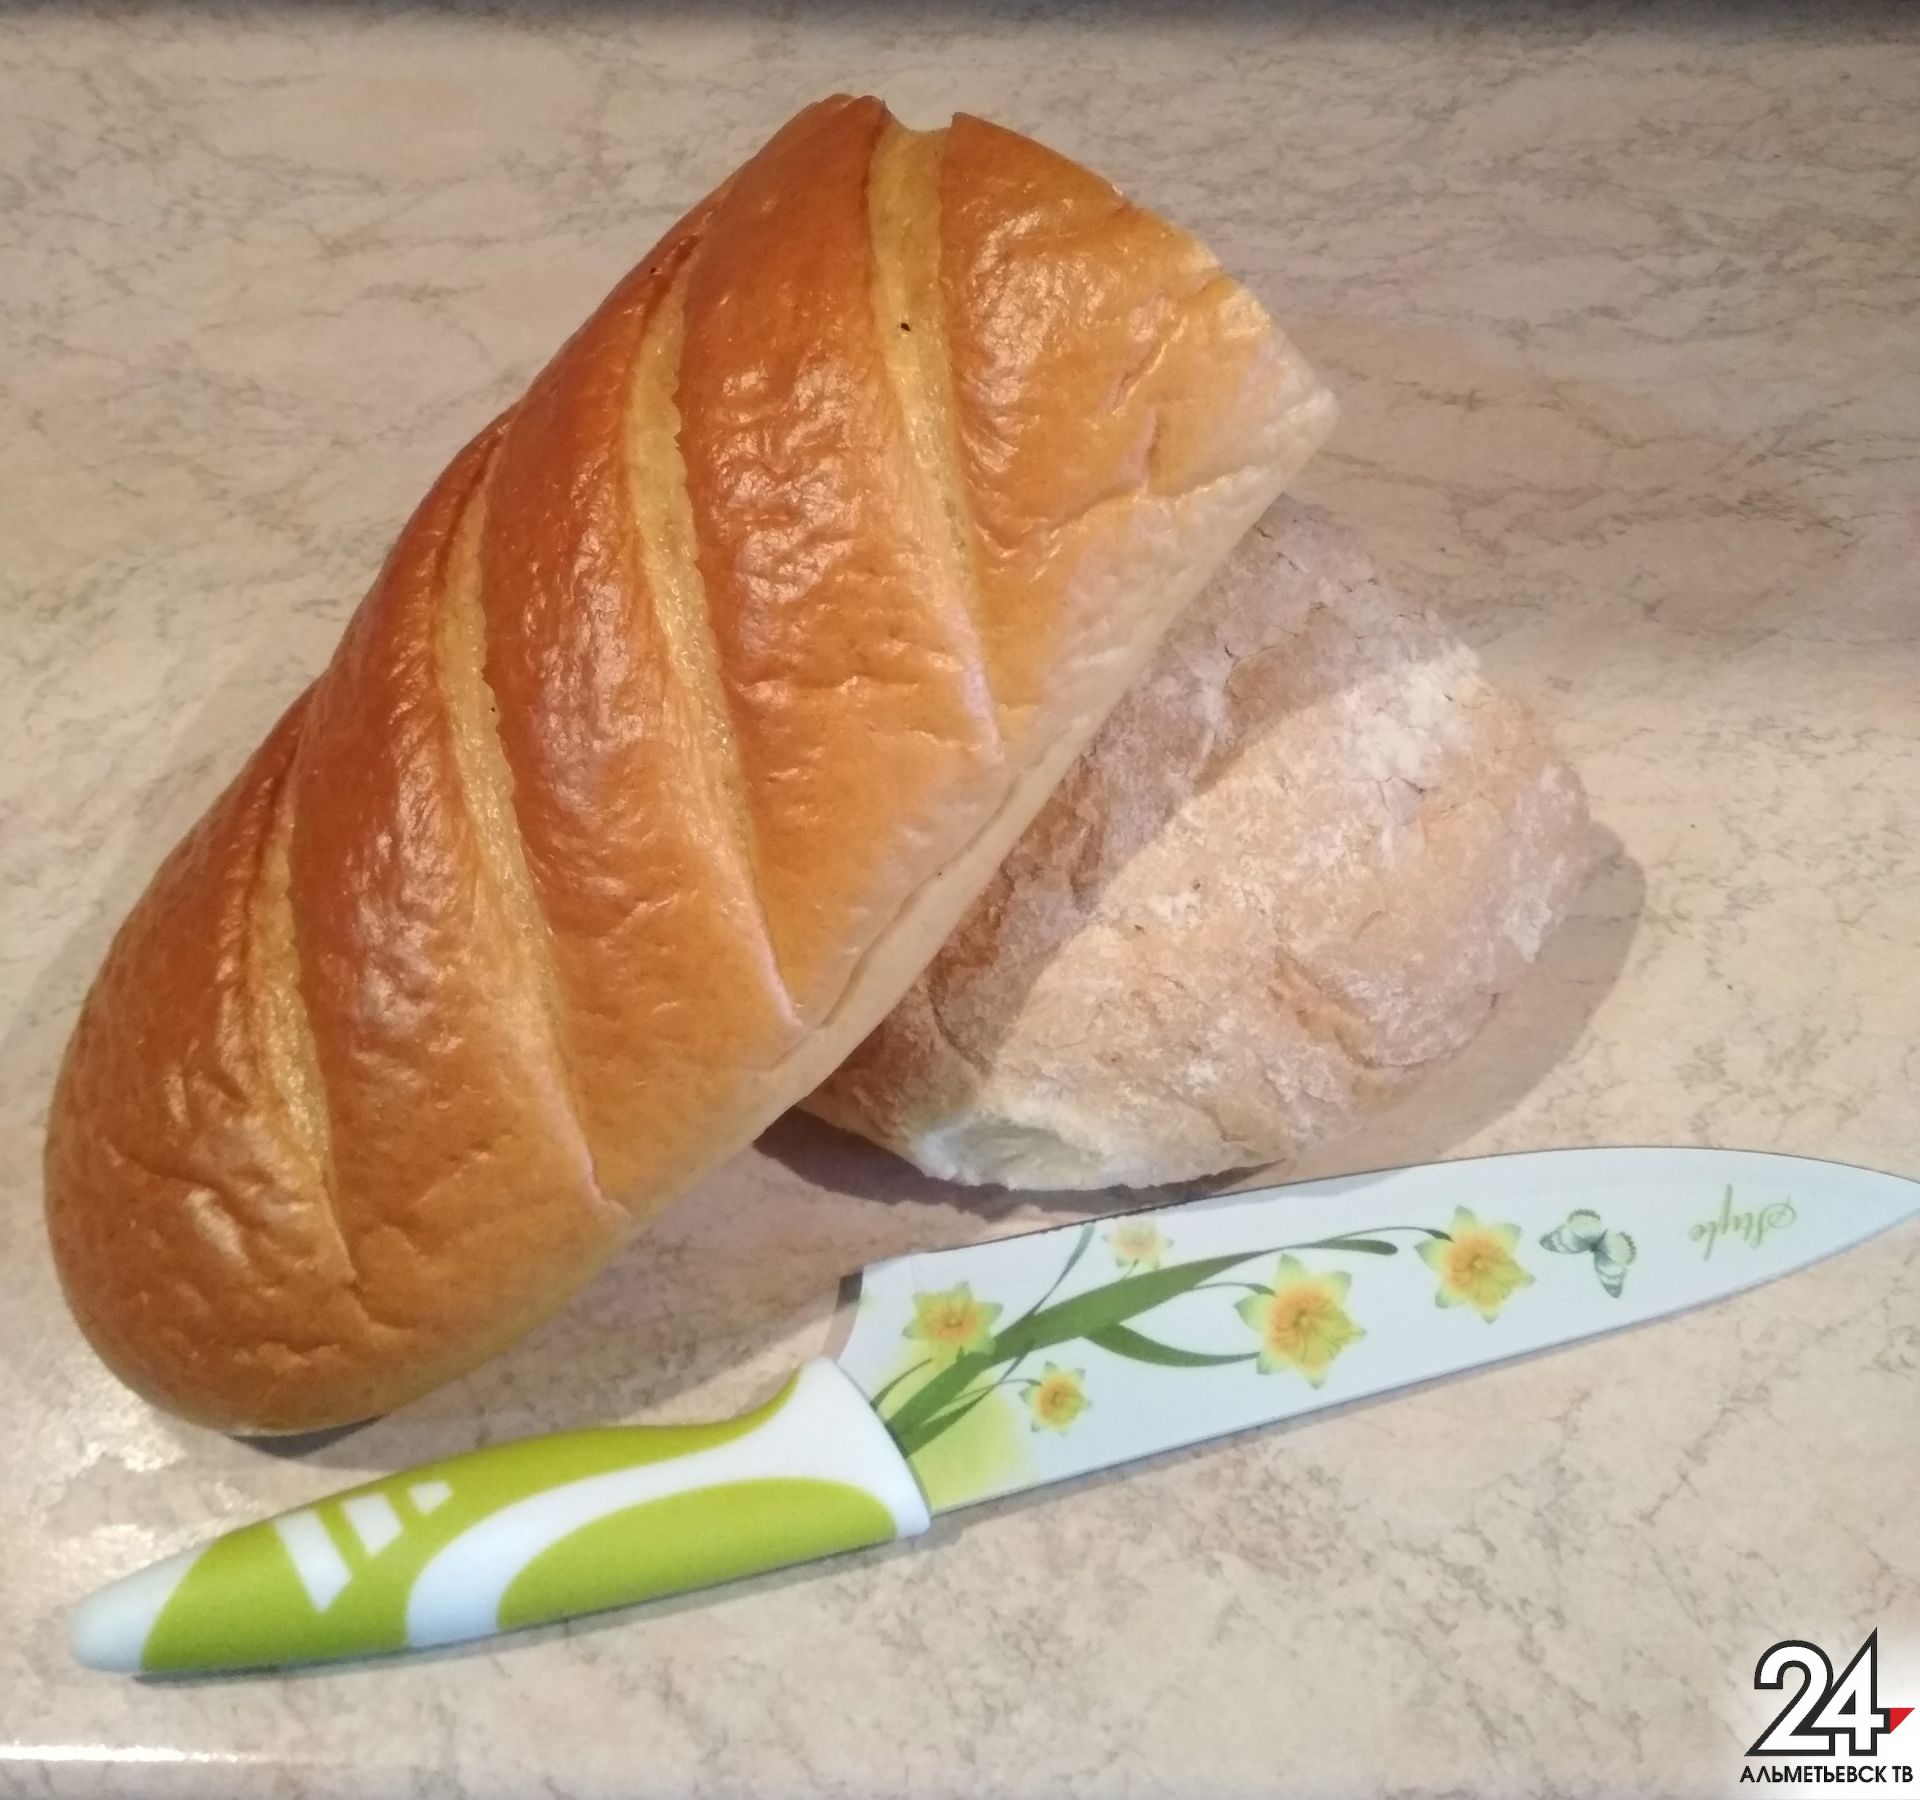 Цена на хлеб от одного из татарстанского производителя выросла на 10 процентов